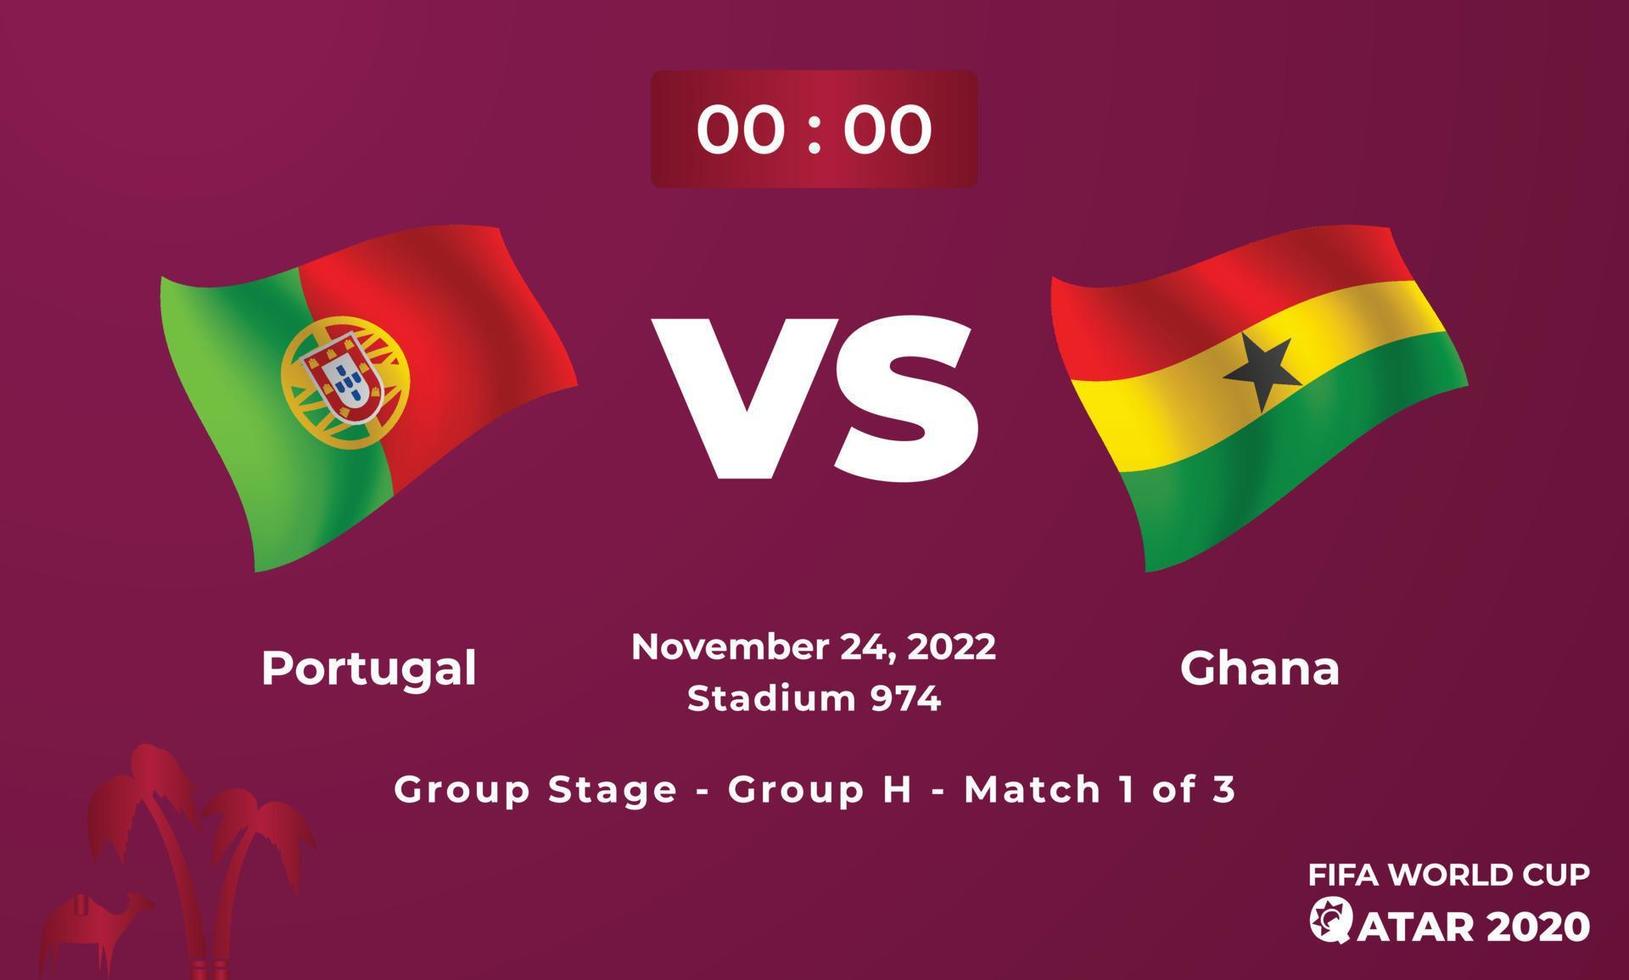 plantilla de partido de fútbol portugal vs ghana, copa mundial de la fifa en qatar 2022 vector